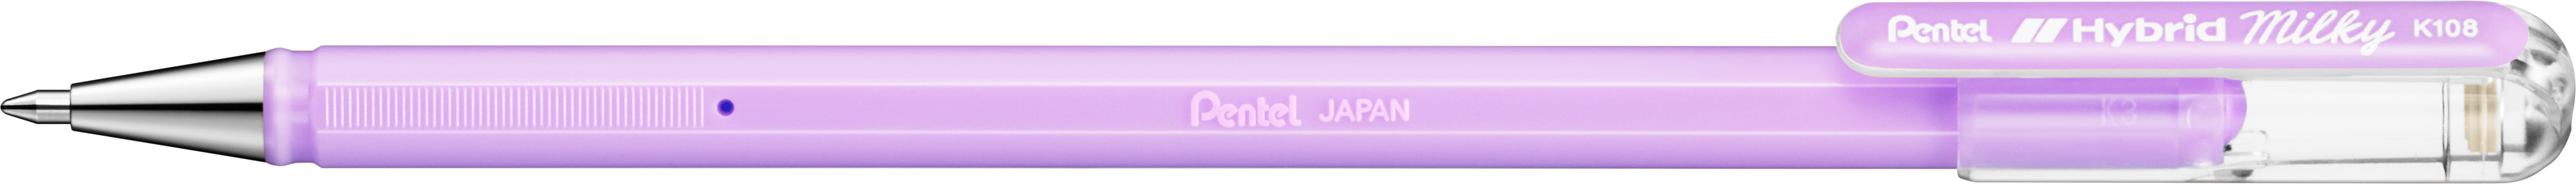 PENTEL Roller Hybrid Metal 0.8mm K108-PV pastell violet